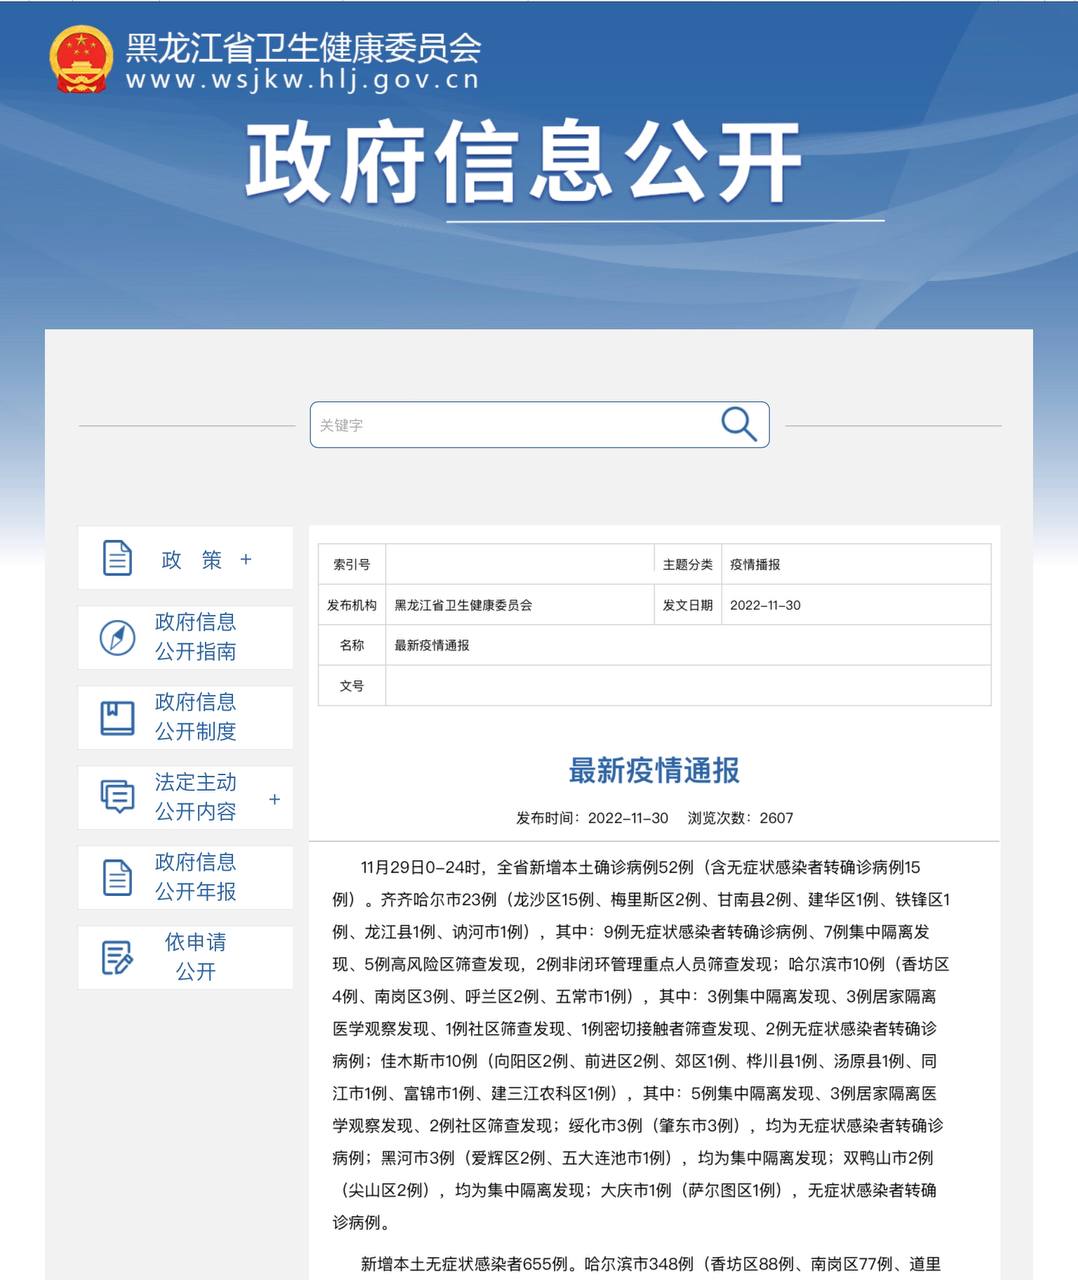 Скриншот: Комитет по гигиене и здравоохранению провинции Хэйлунцзян